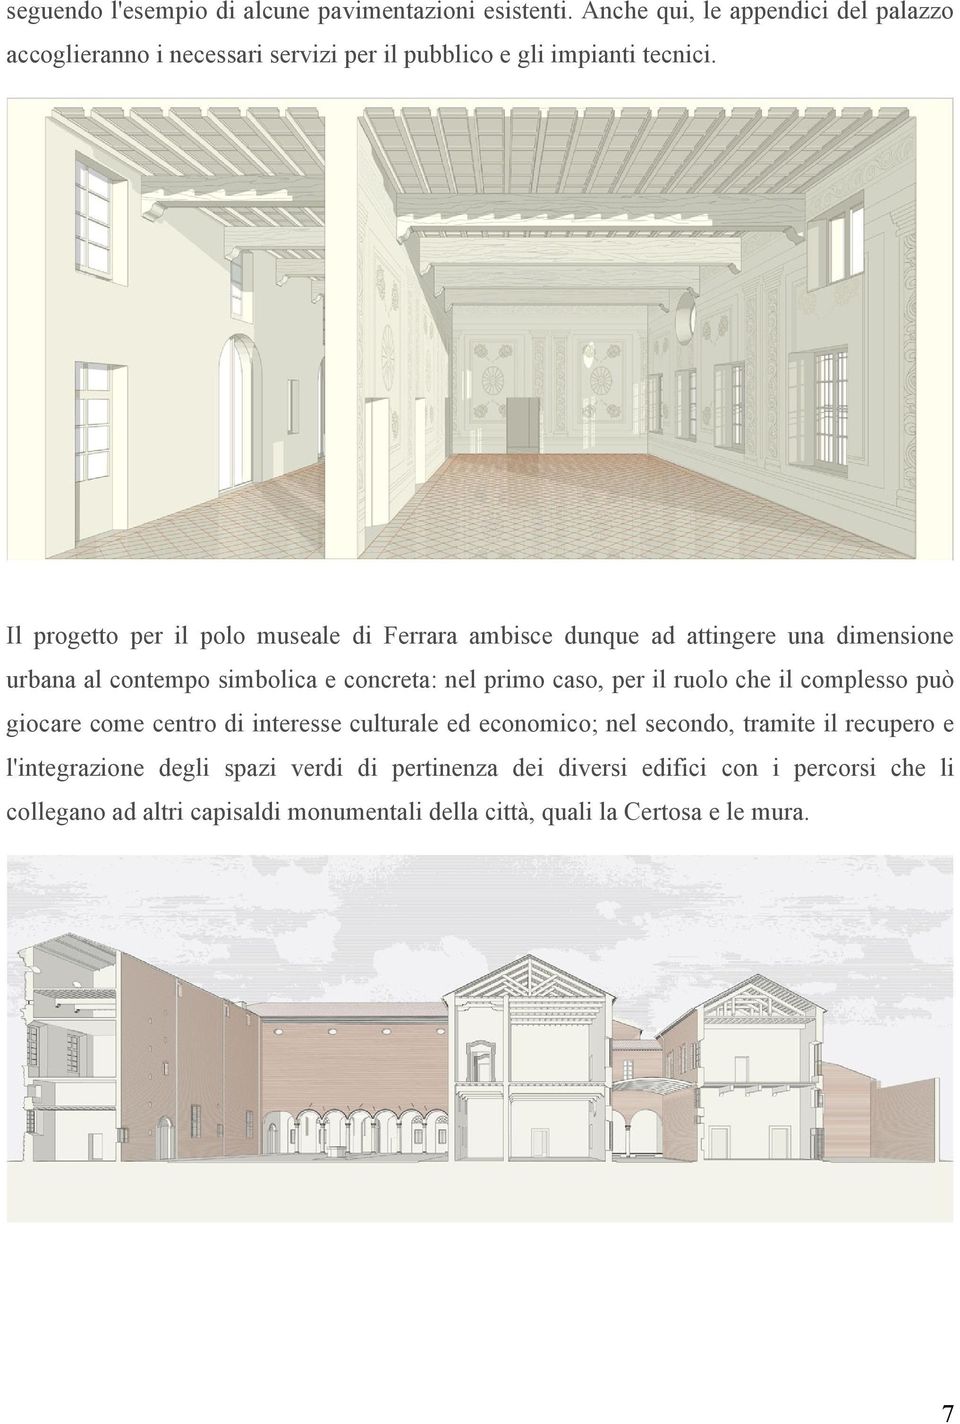 Il progetto per il polo museale di Ferrara ambisce dunque ad attingere una dimensione urbana al contempo simbolica e concreta: nel primo caso, per il